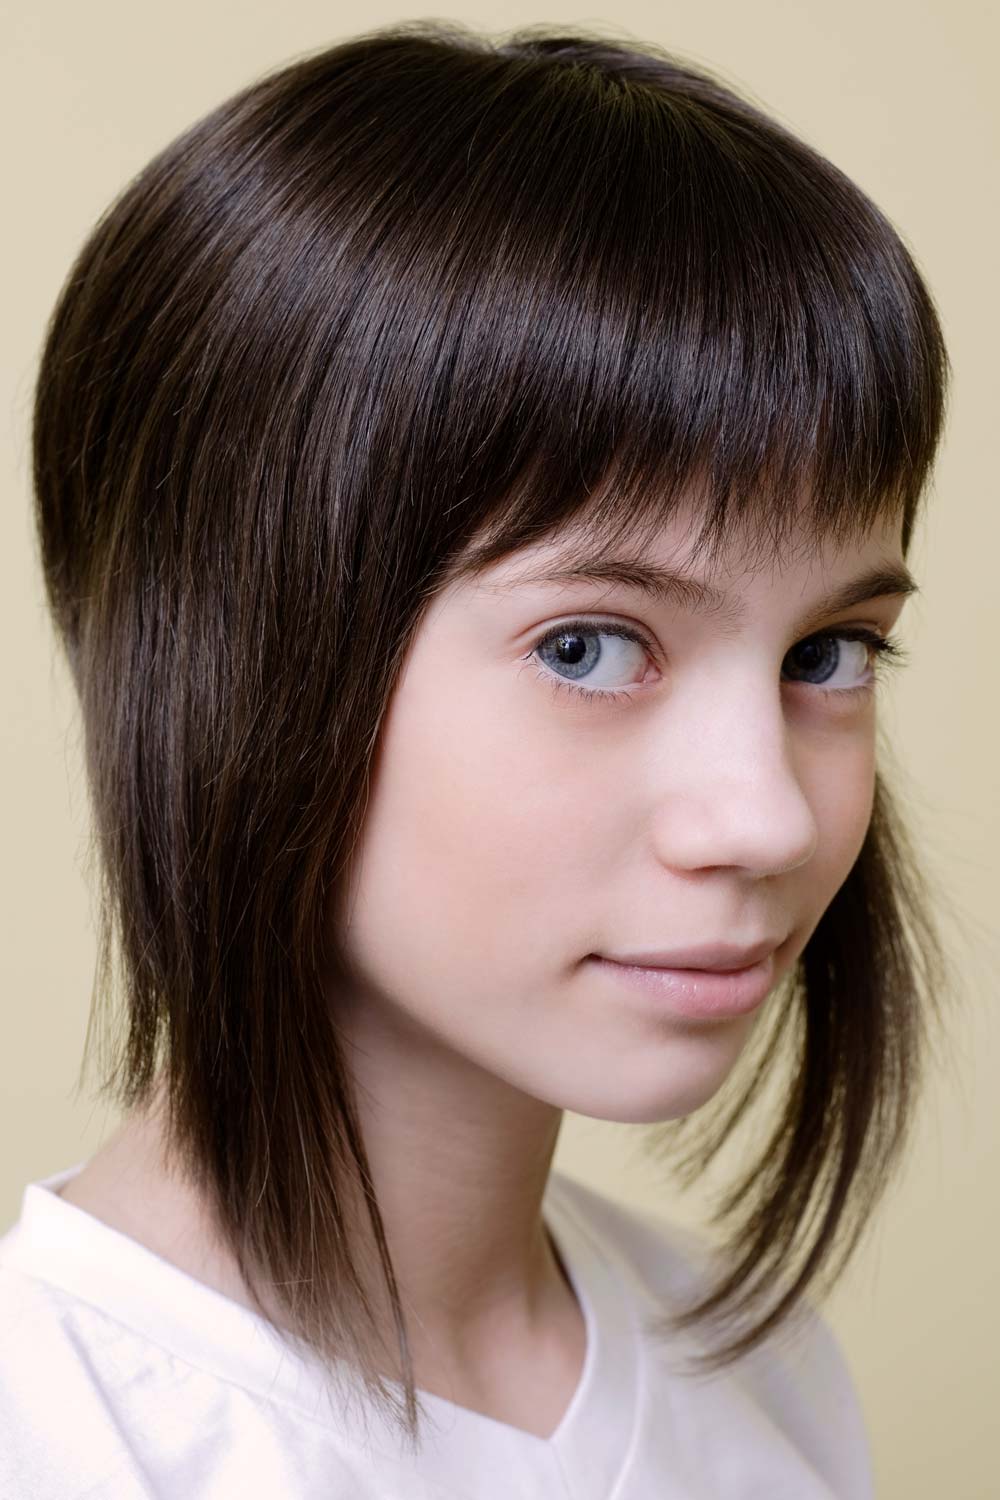 Choppy Fringe for Sort Stacked Haircut for Girls